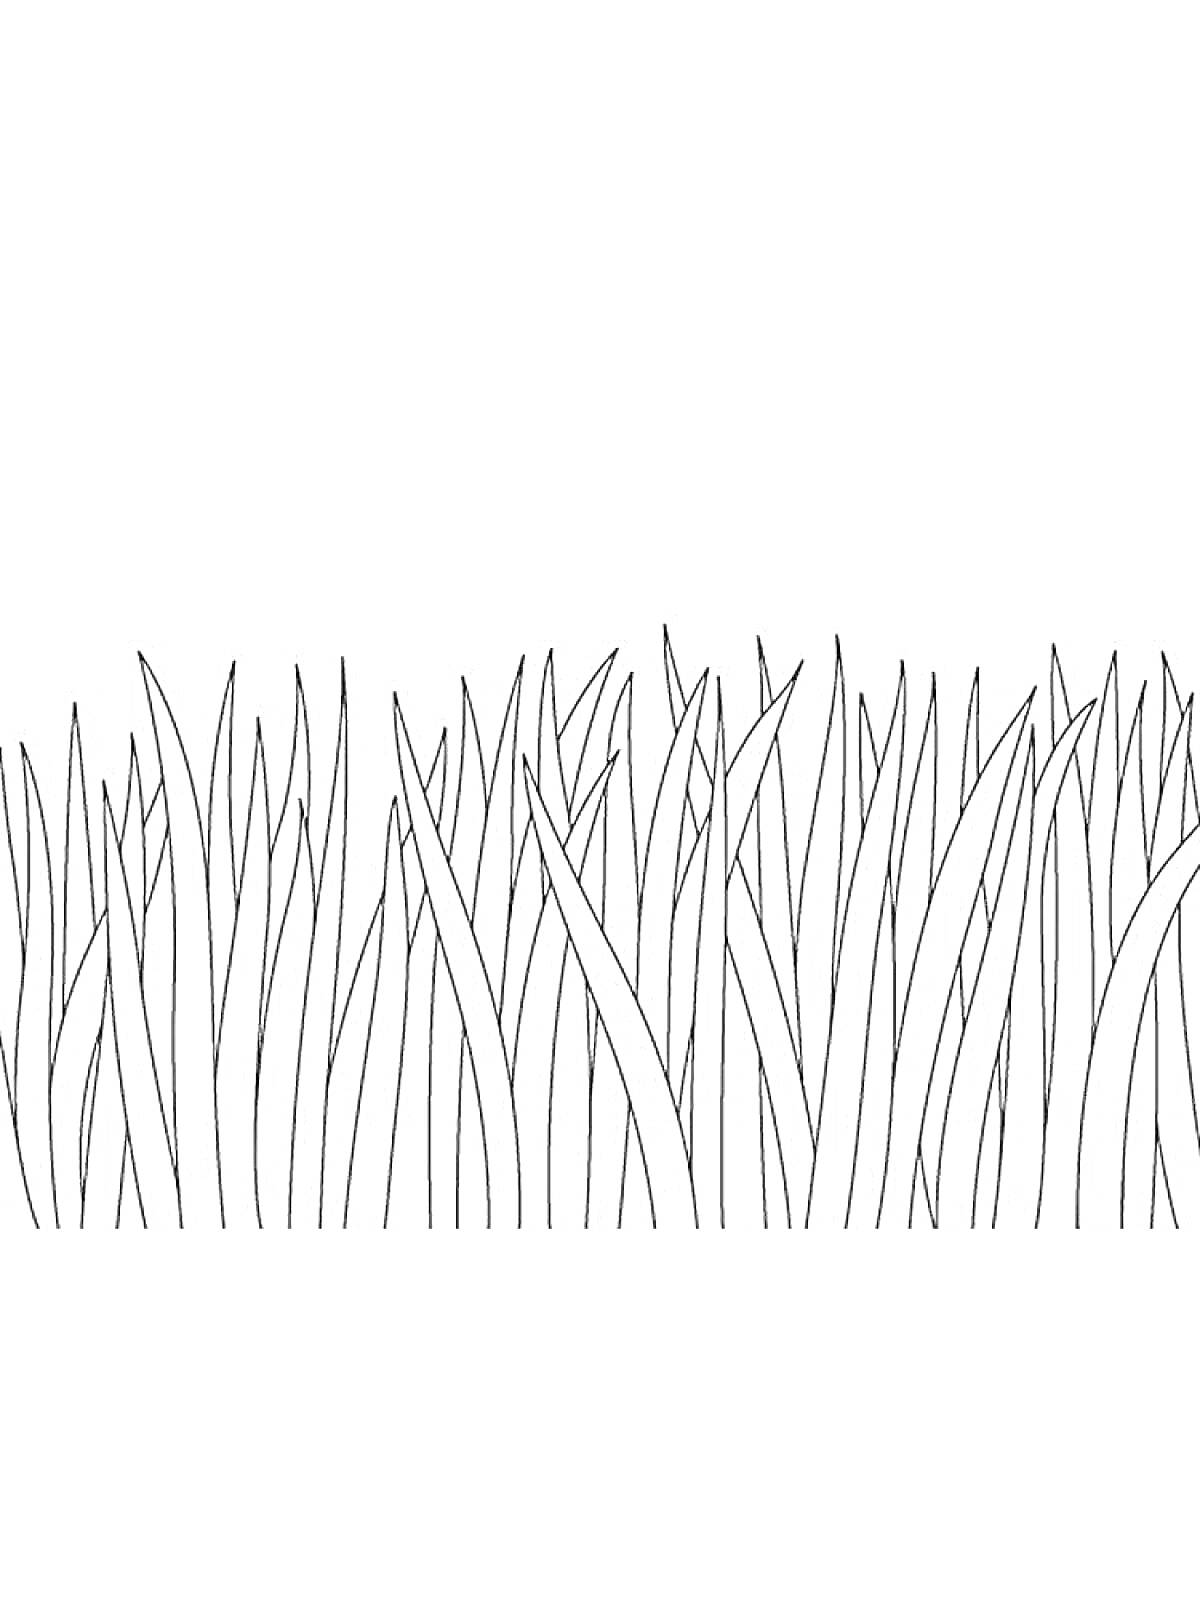 Раскраска Травяные стебли, трава, черно-белая раскраска, набор травинок